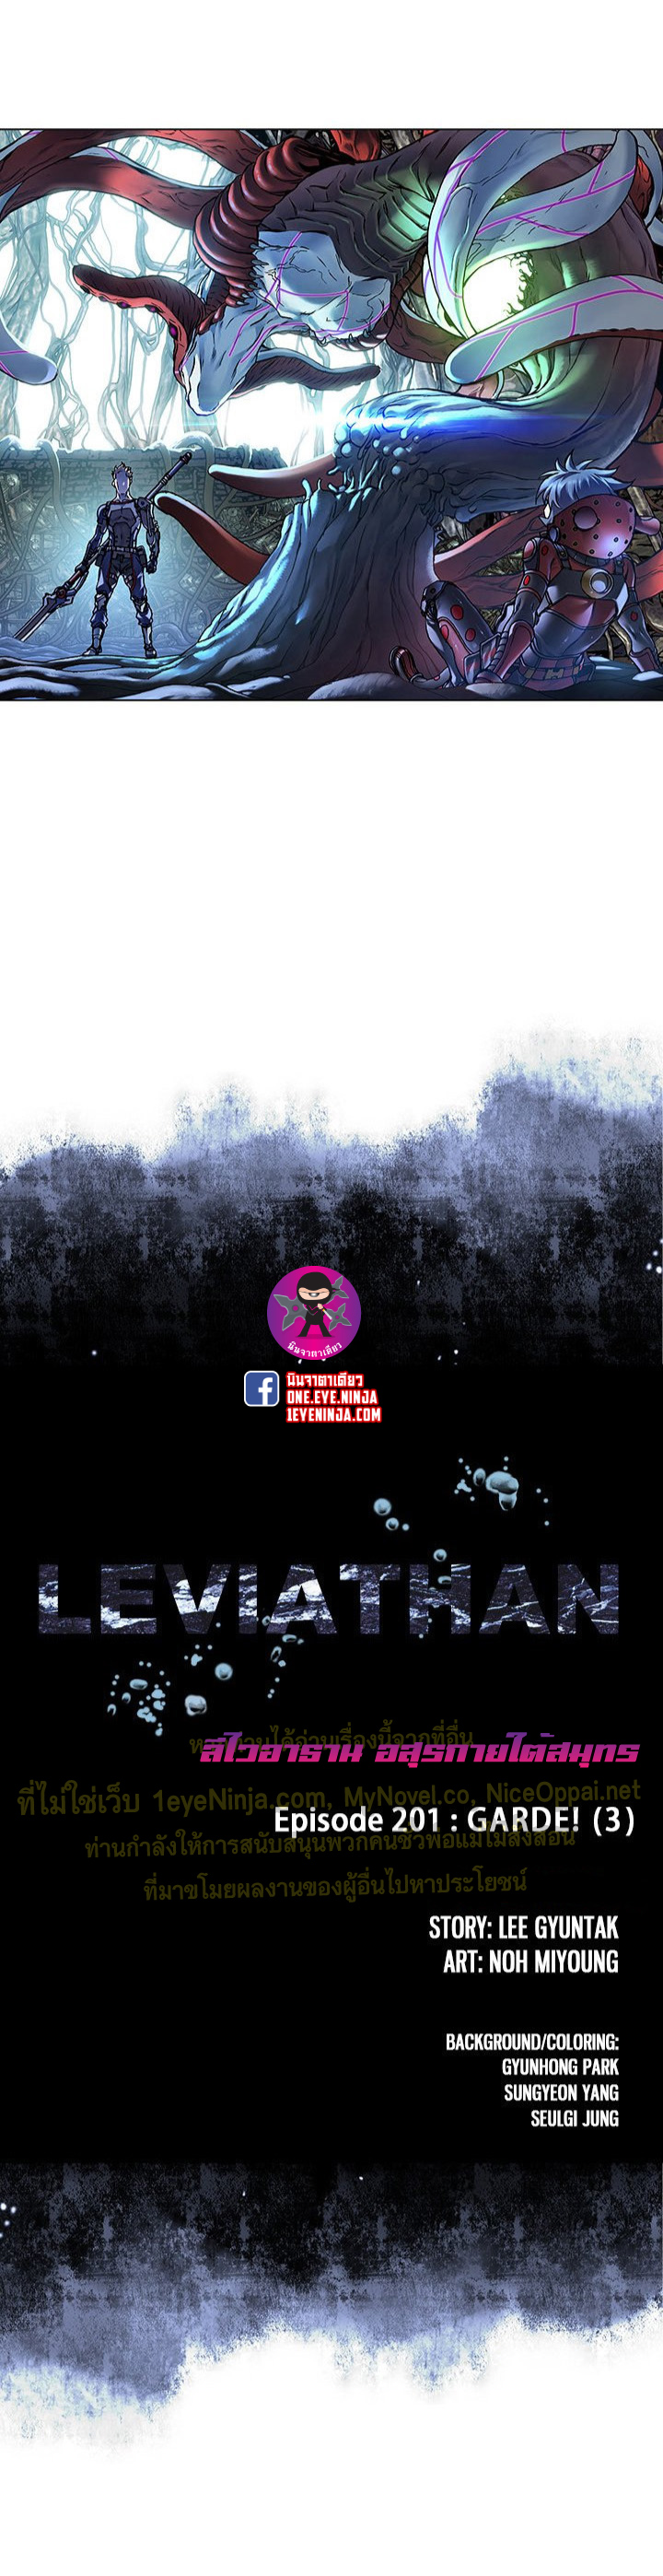 Leviathan201 01